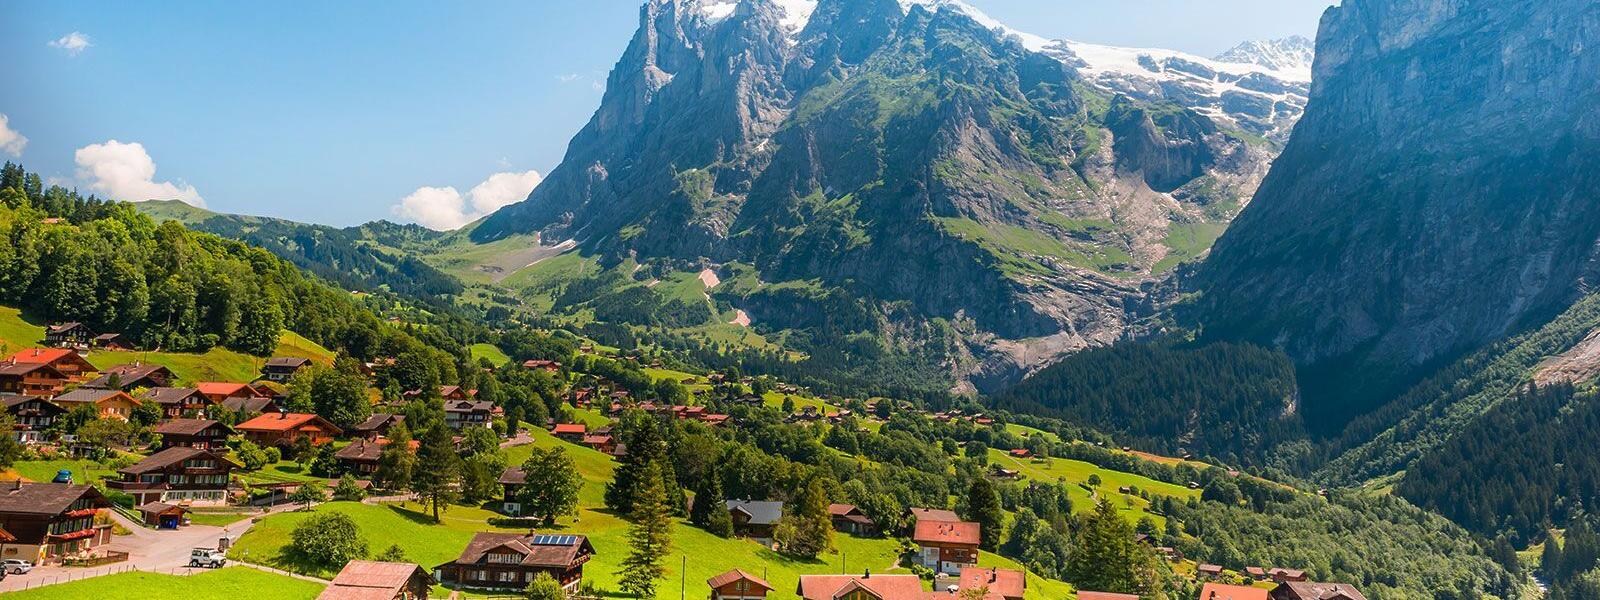 Sommerferien in den Schweizer Alpen - e-domizil